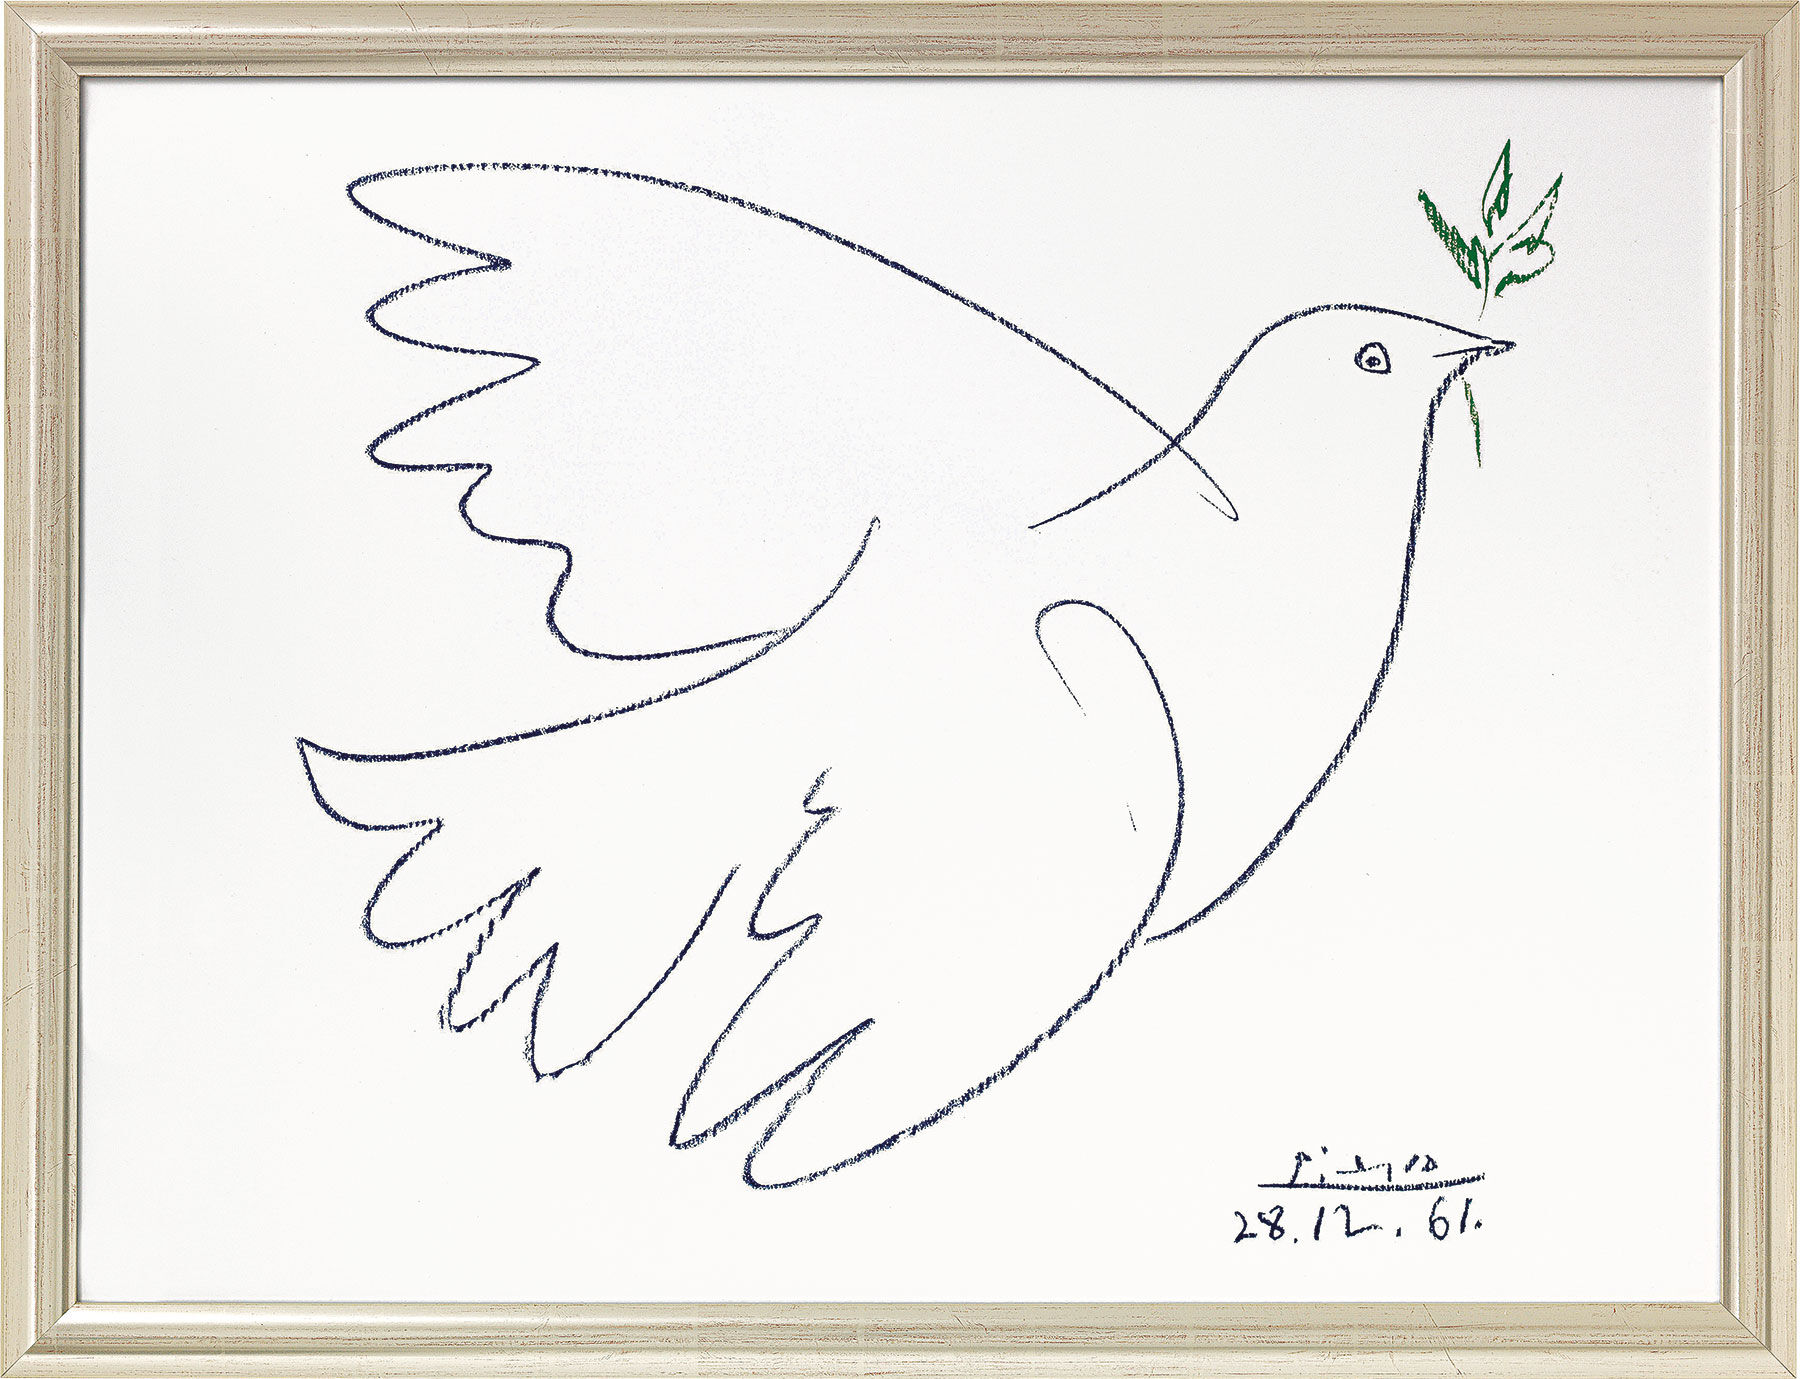 Gemälde "Friedenstaube" (1961), gerahmt – Pablo Picasso